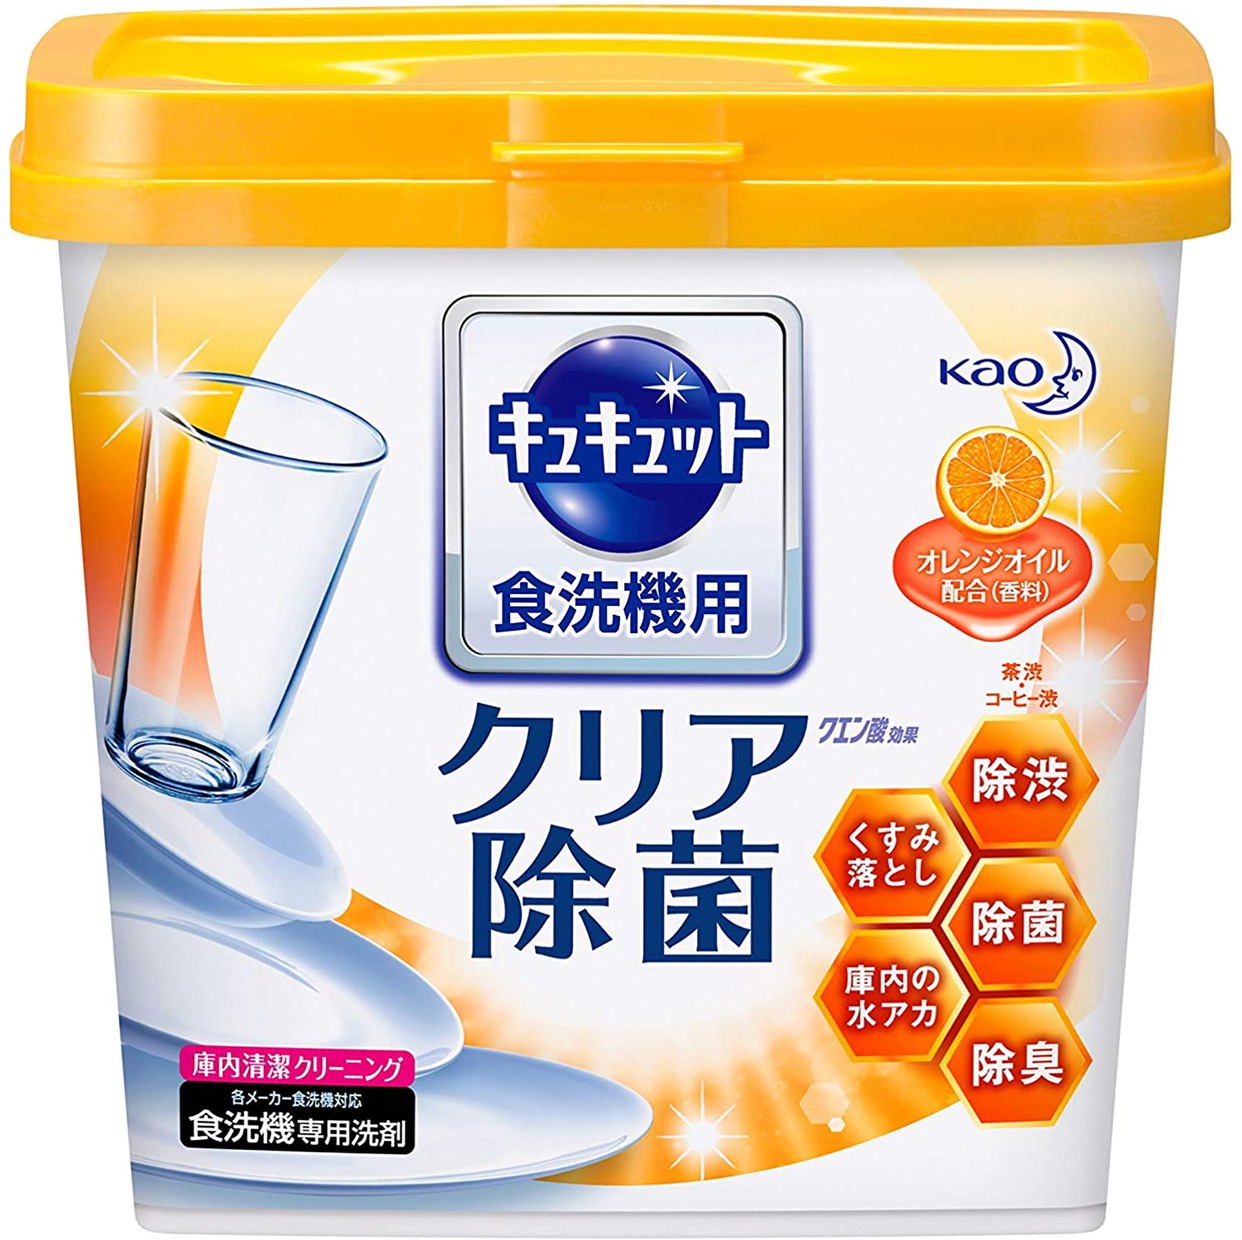 花王(kao) 食器洗い乾燥機専用キュキュット クエン酸効果 オレンジオイル配合